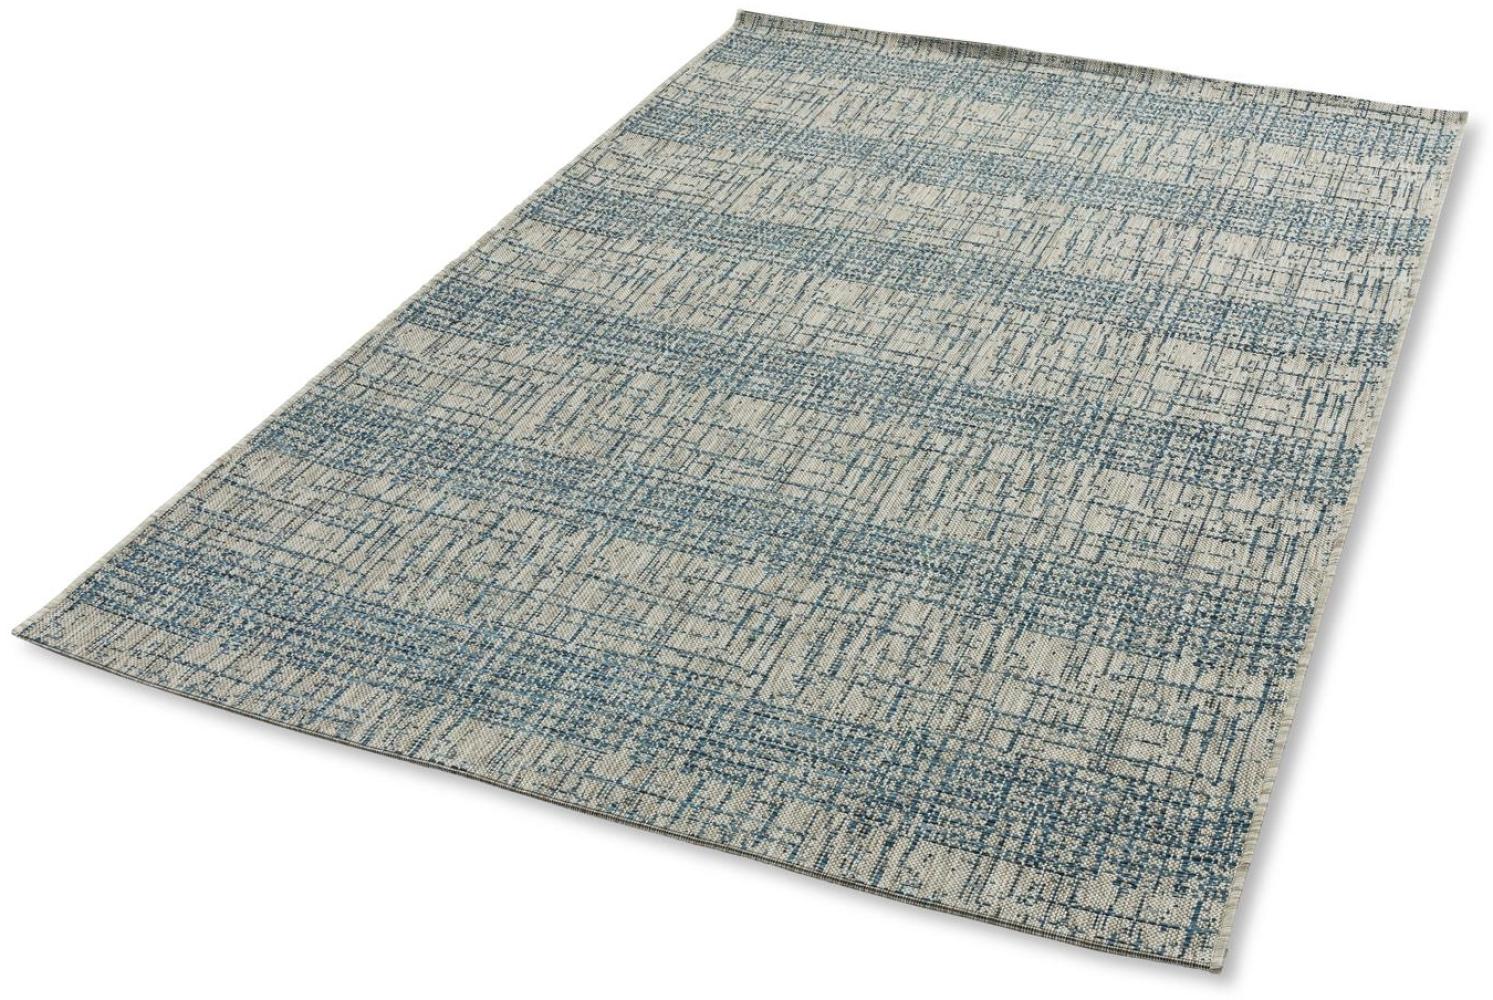 Teppich in blau aus 100% Polypropylen - 230x160x0,5cm (LxBxH) Bild 1